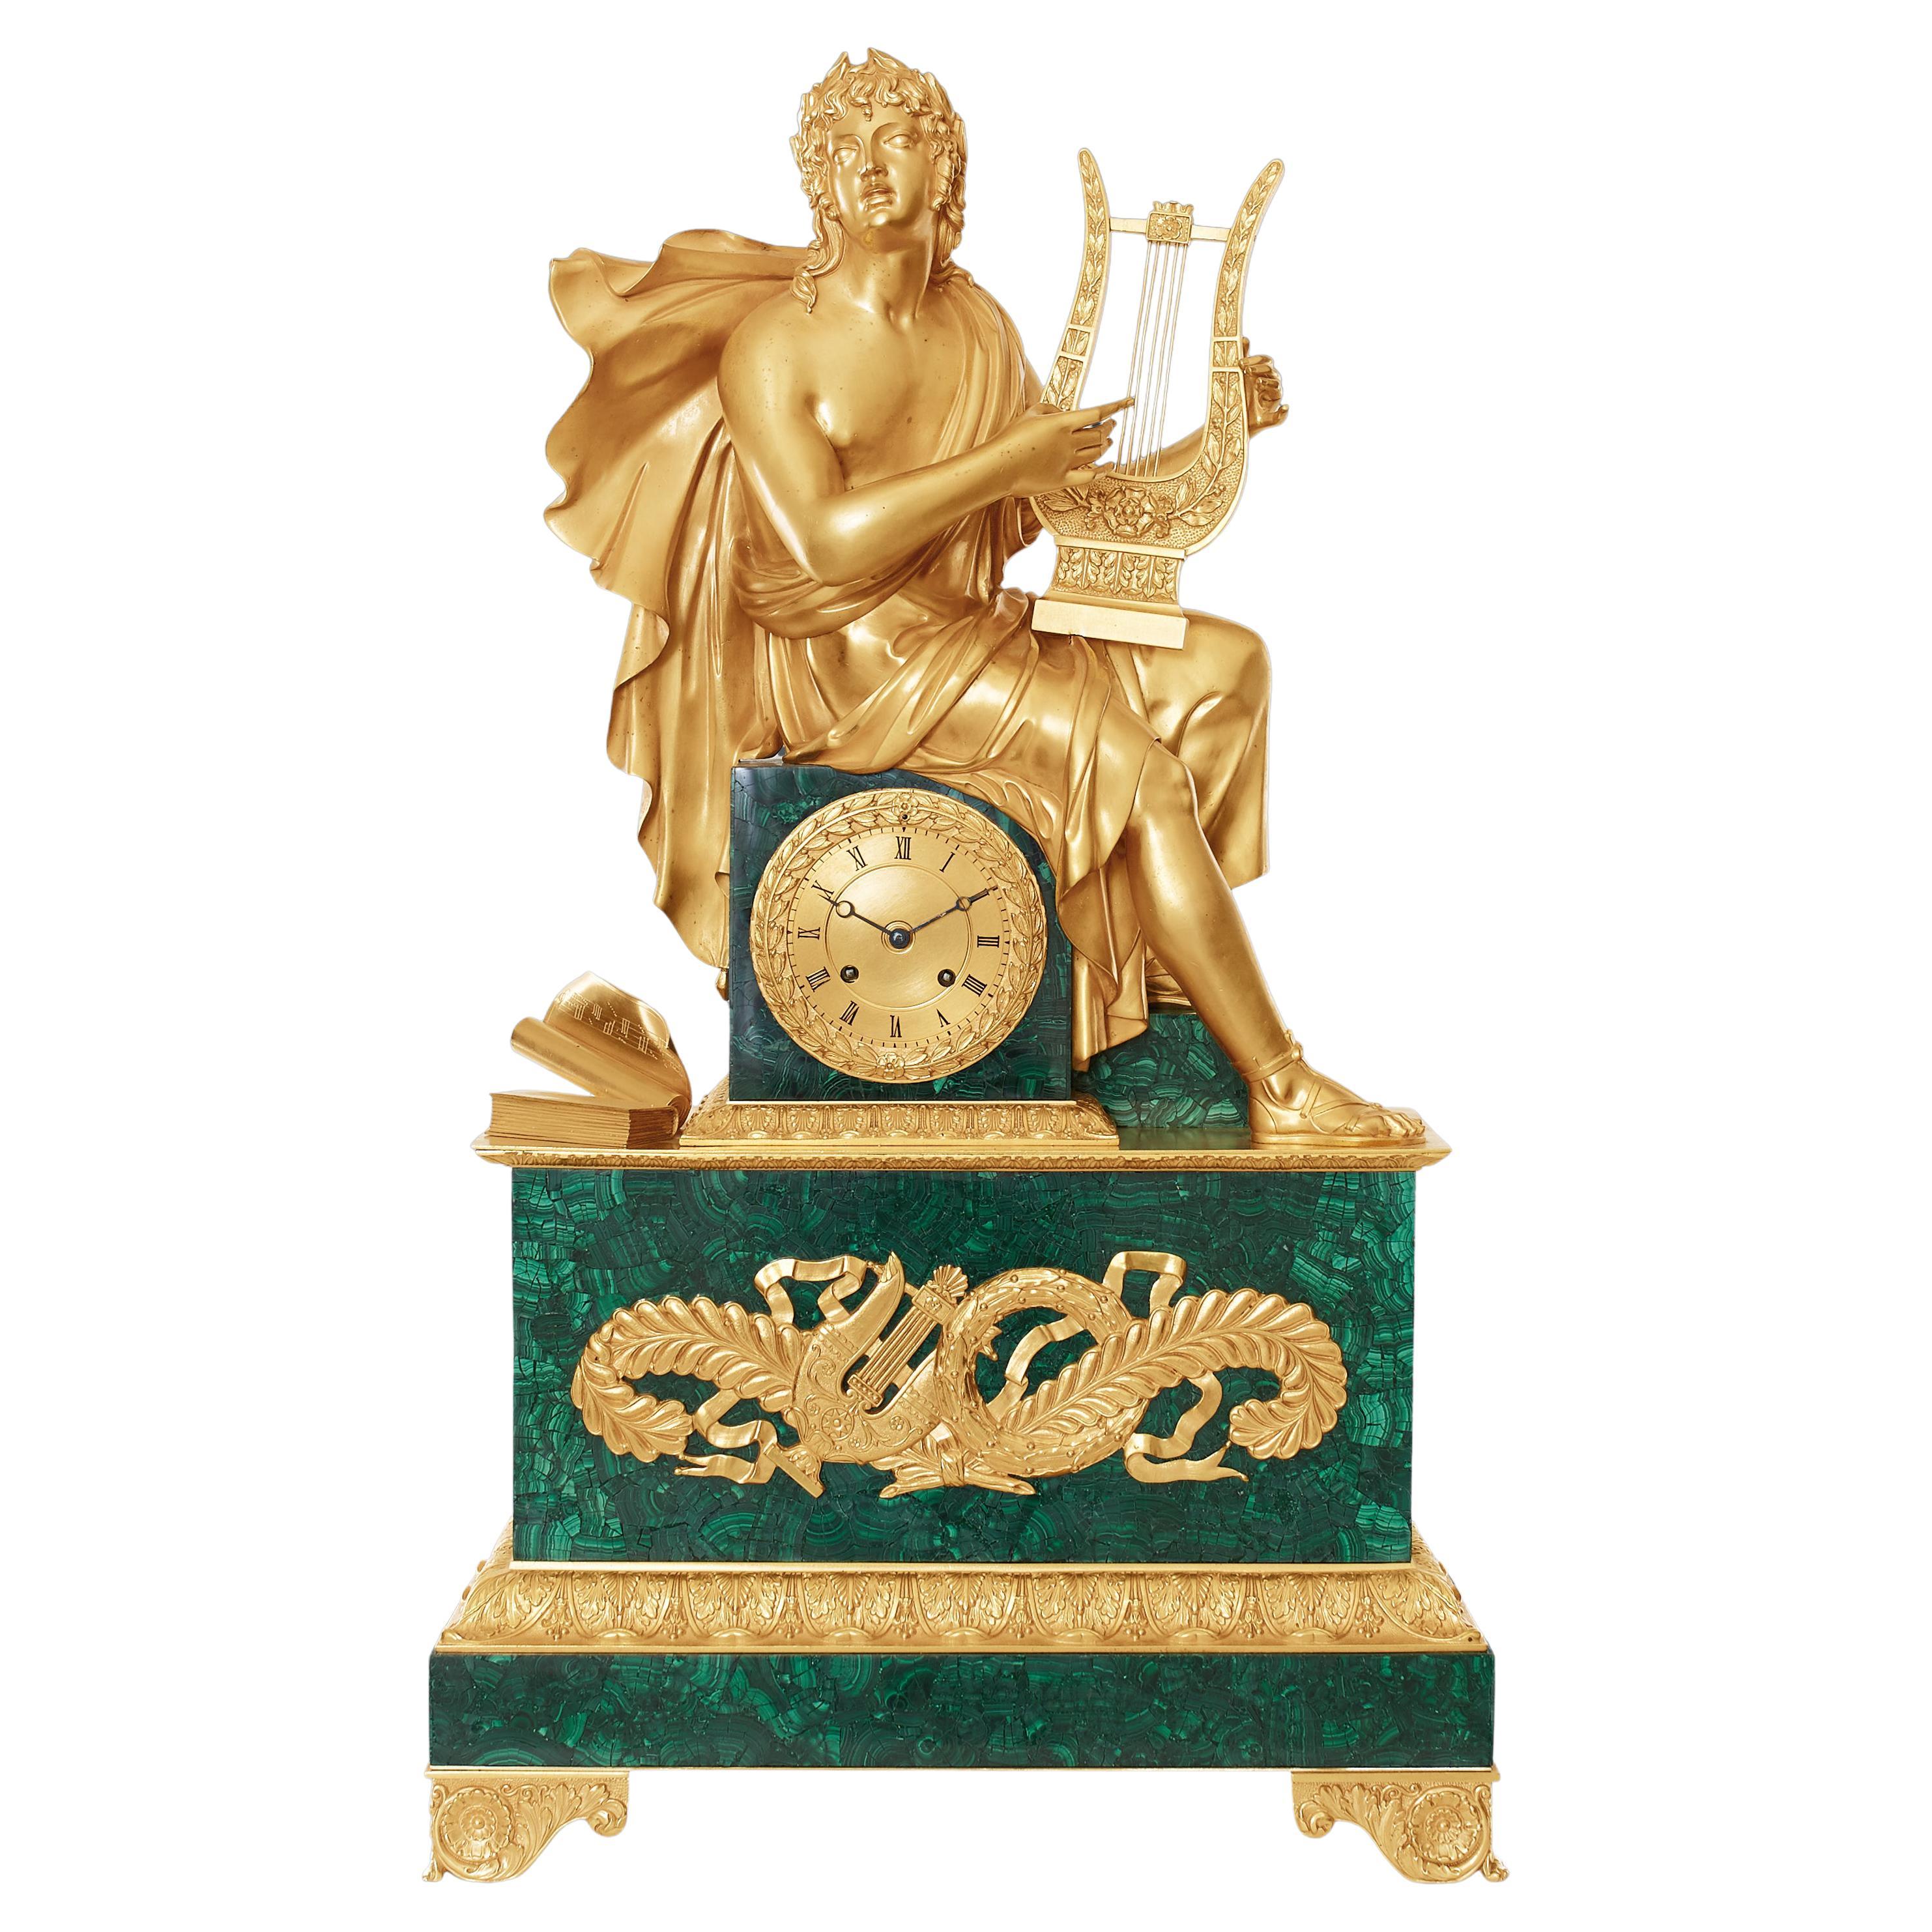 Pendule de chemine du XIXe sicle, style Louis Philippe Charles X